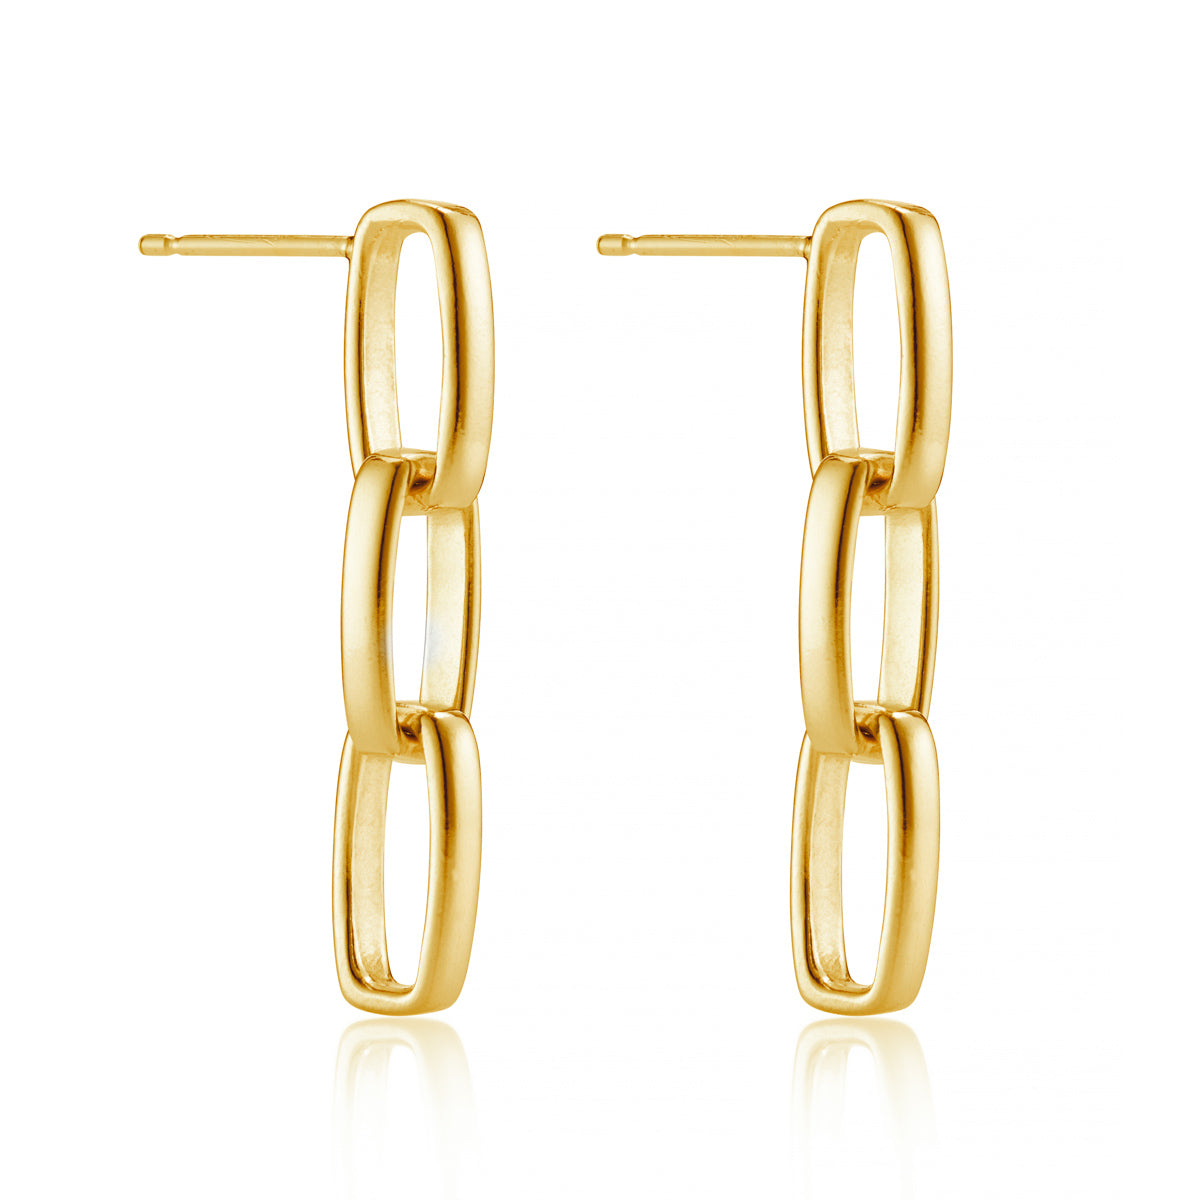 Triad Link Earrings in 14k Gold